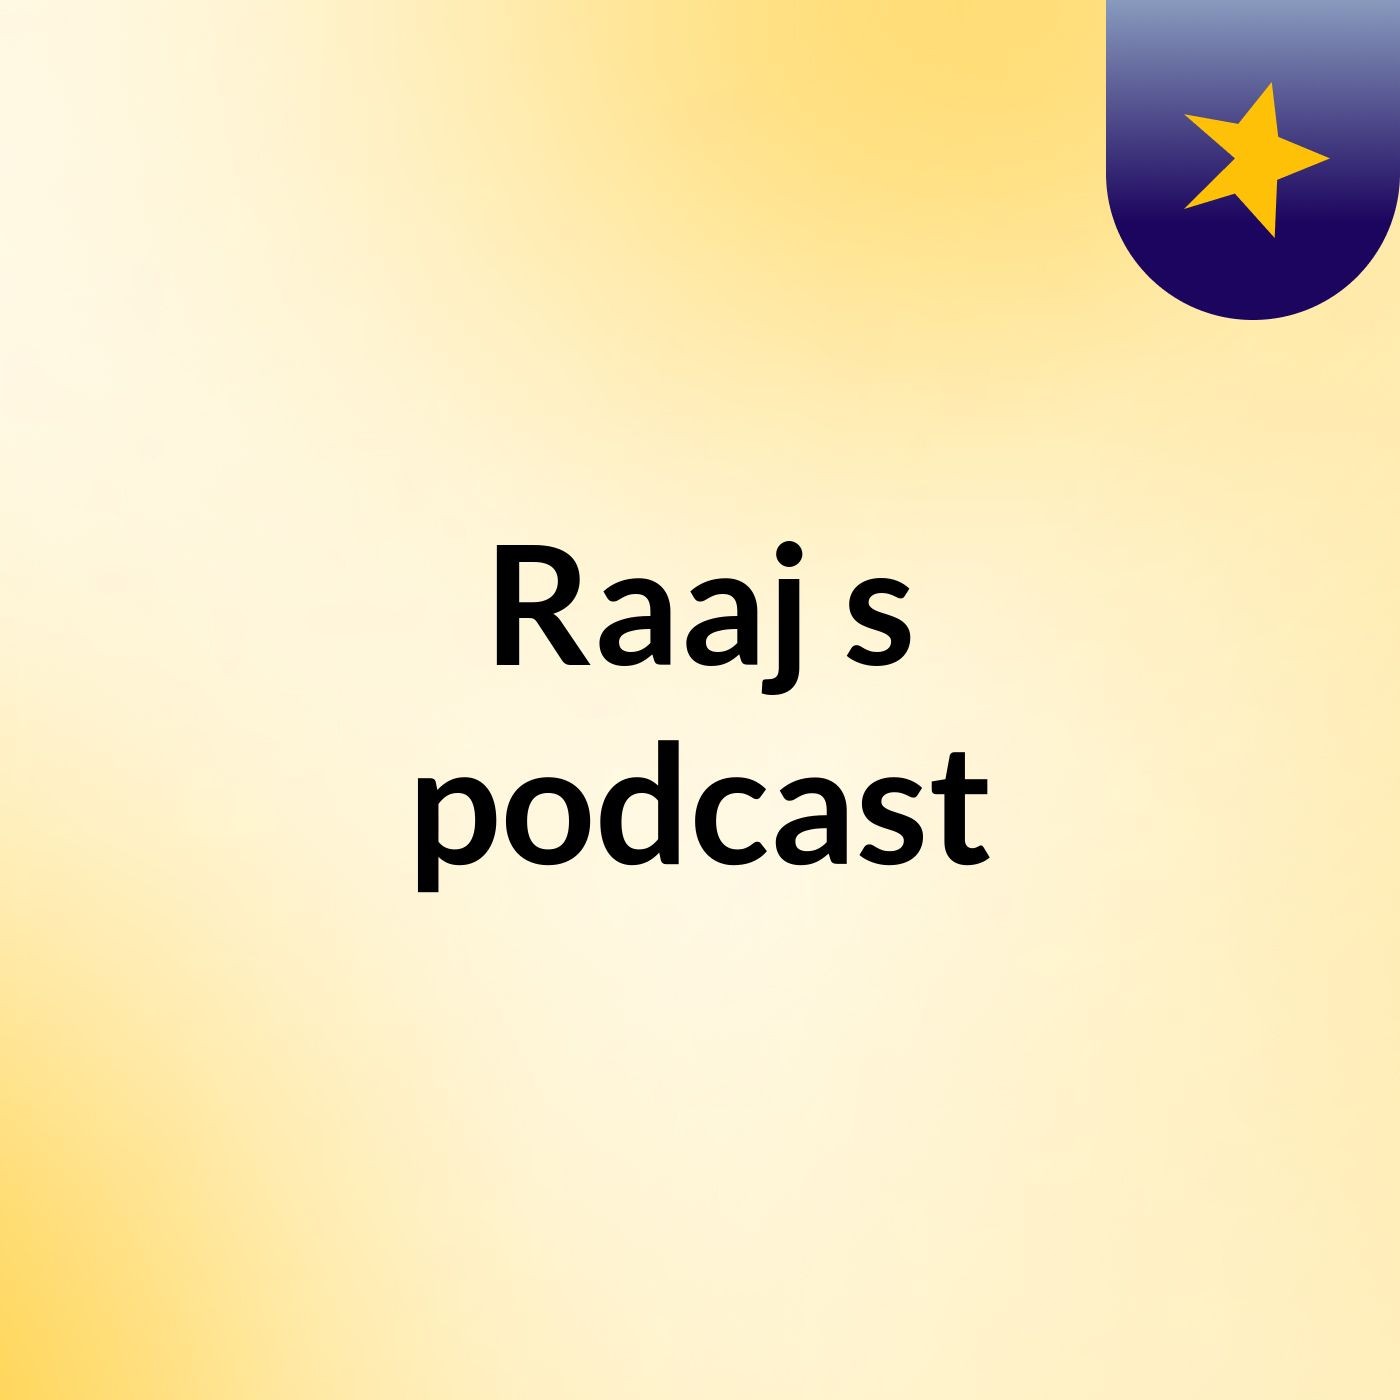 Raaj's podcast